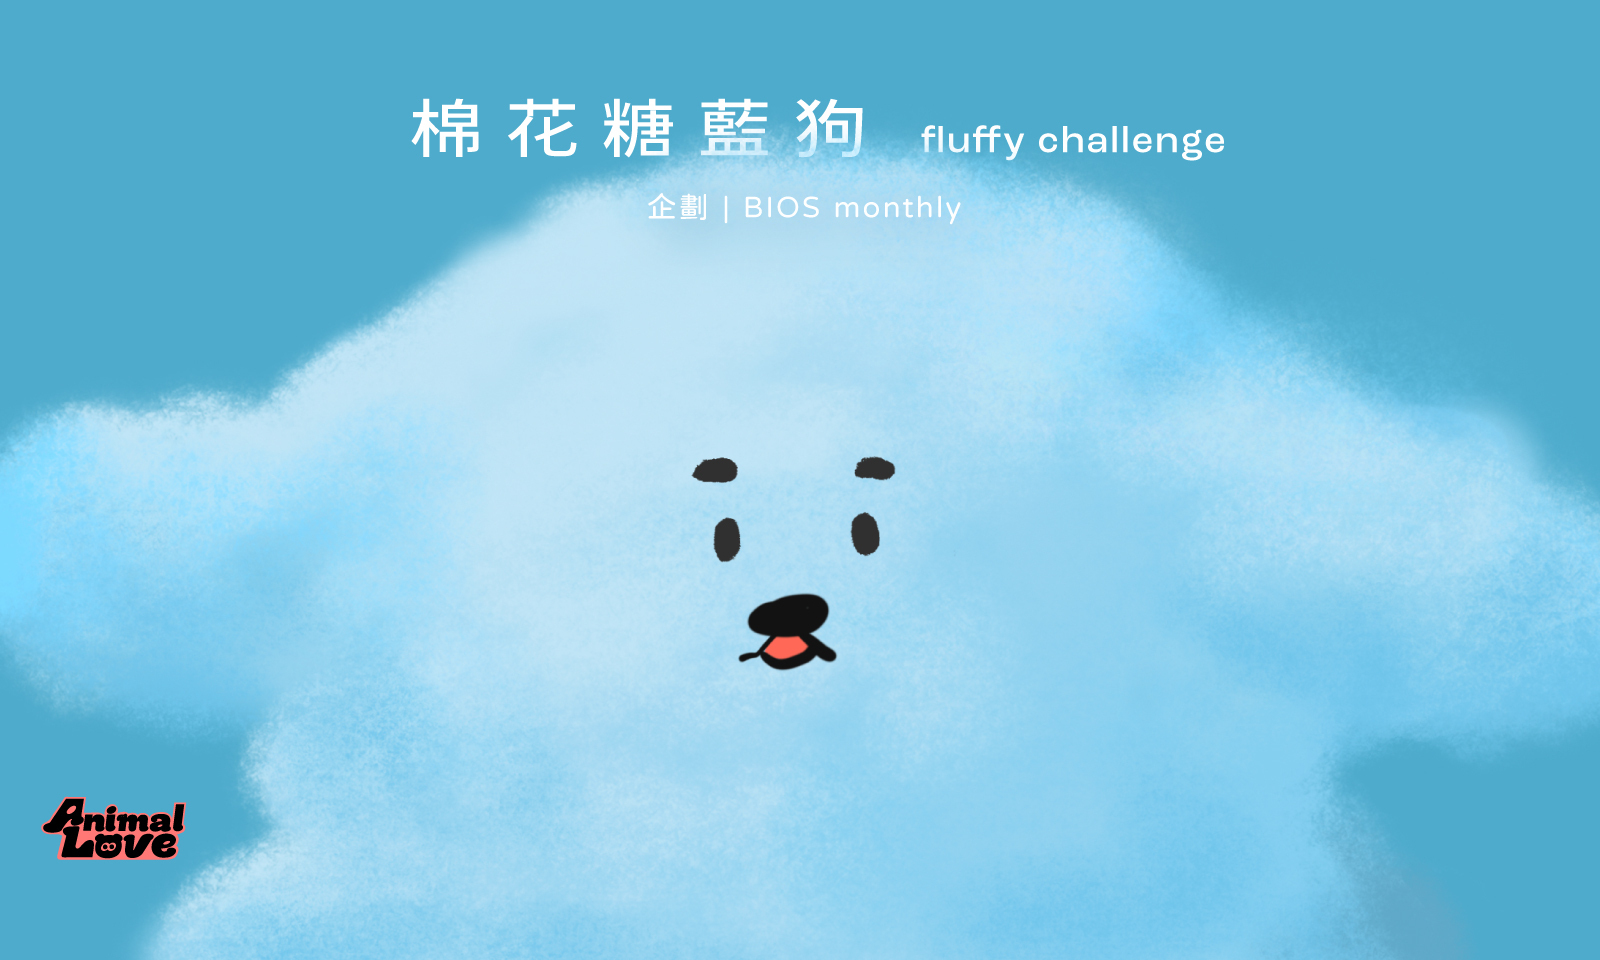 插畫家的 fluffy challenge：棉花糖藍狗 go！